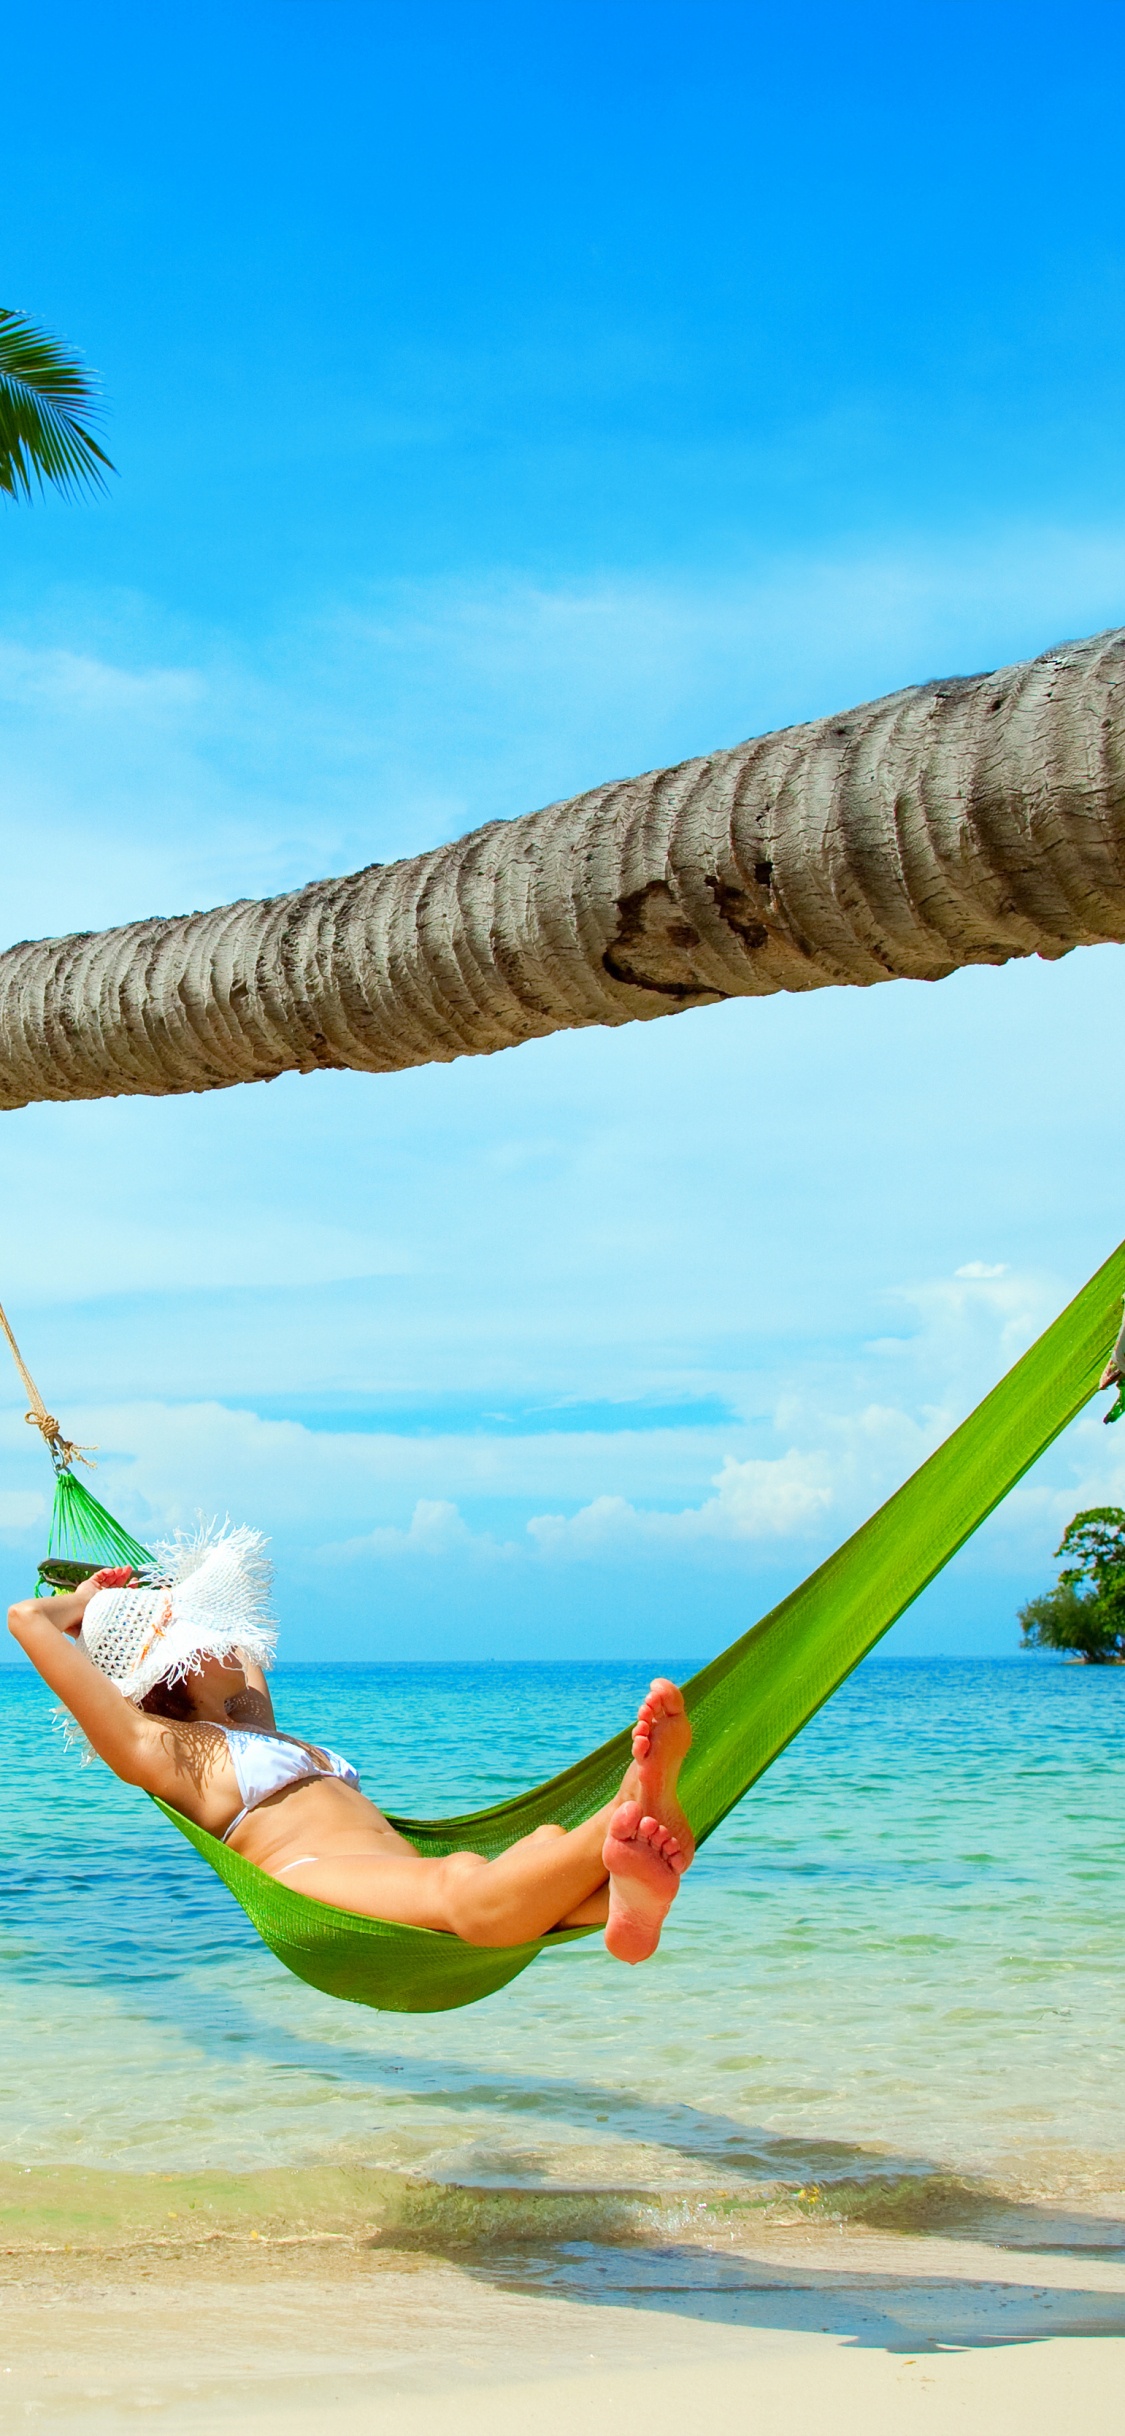 吊床, 大海, 热带地区, 度假, 加勒比 壁纸 1125x2436 允许